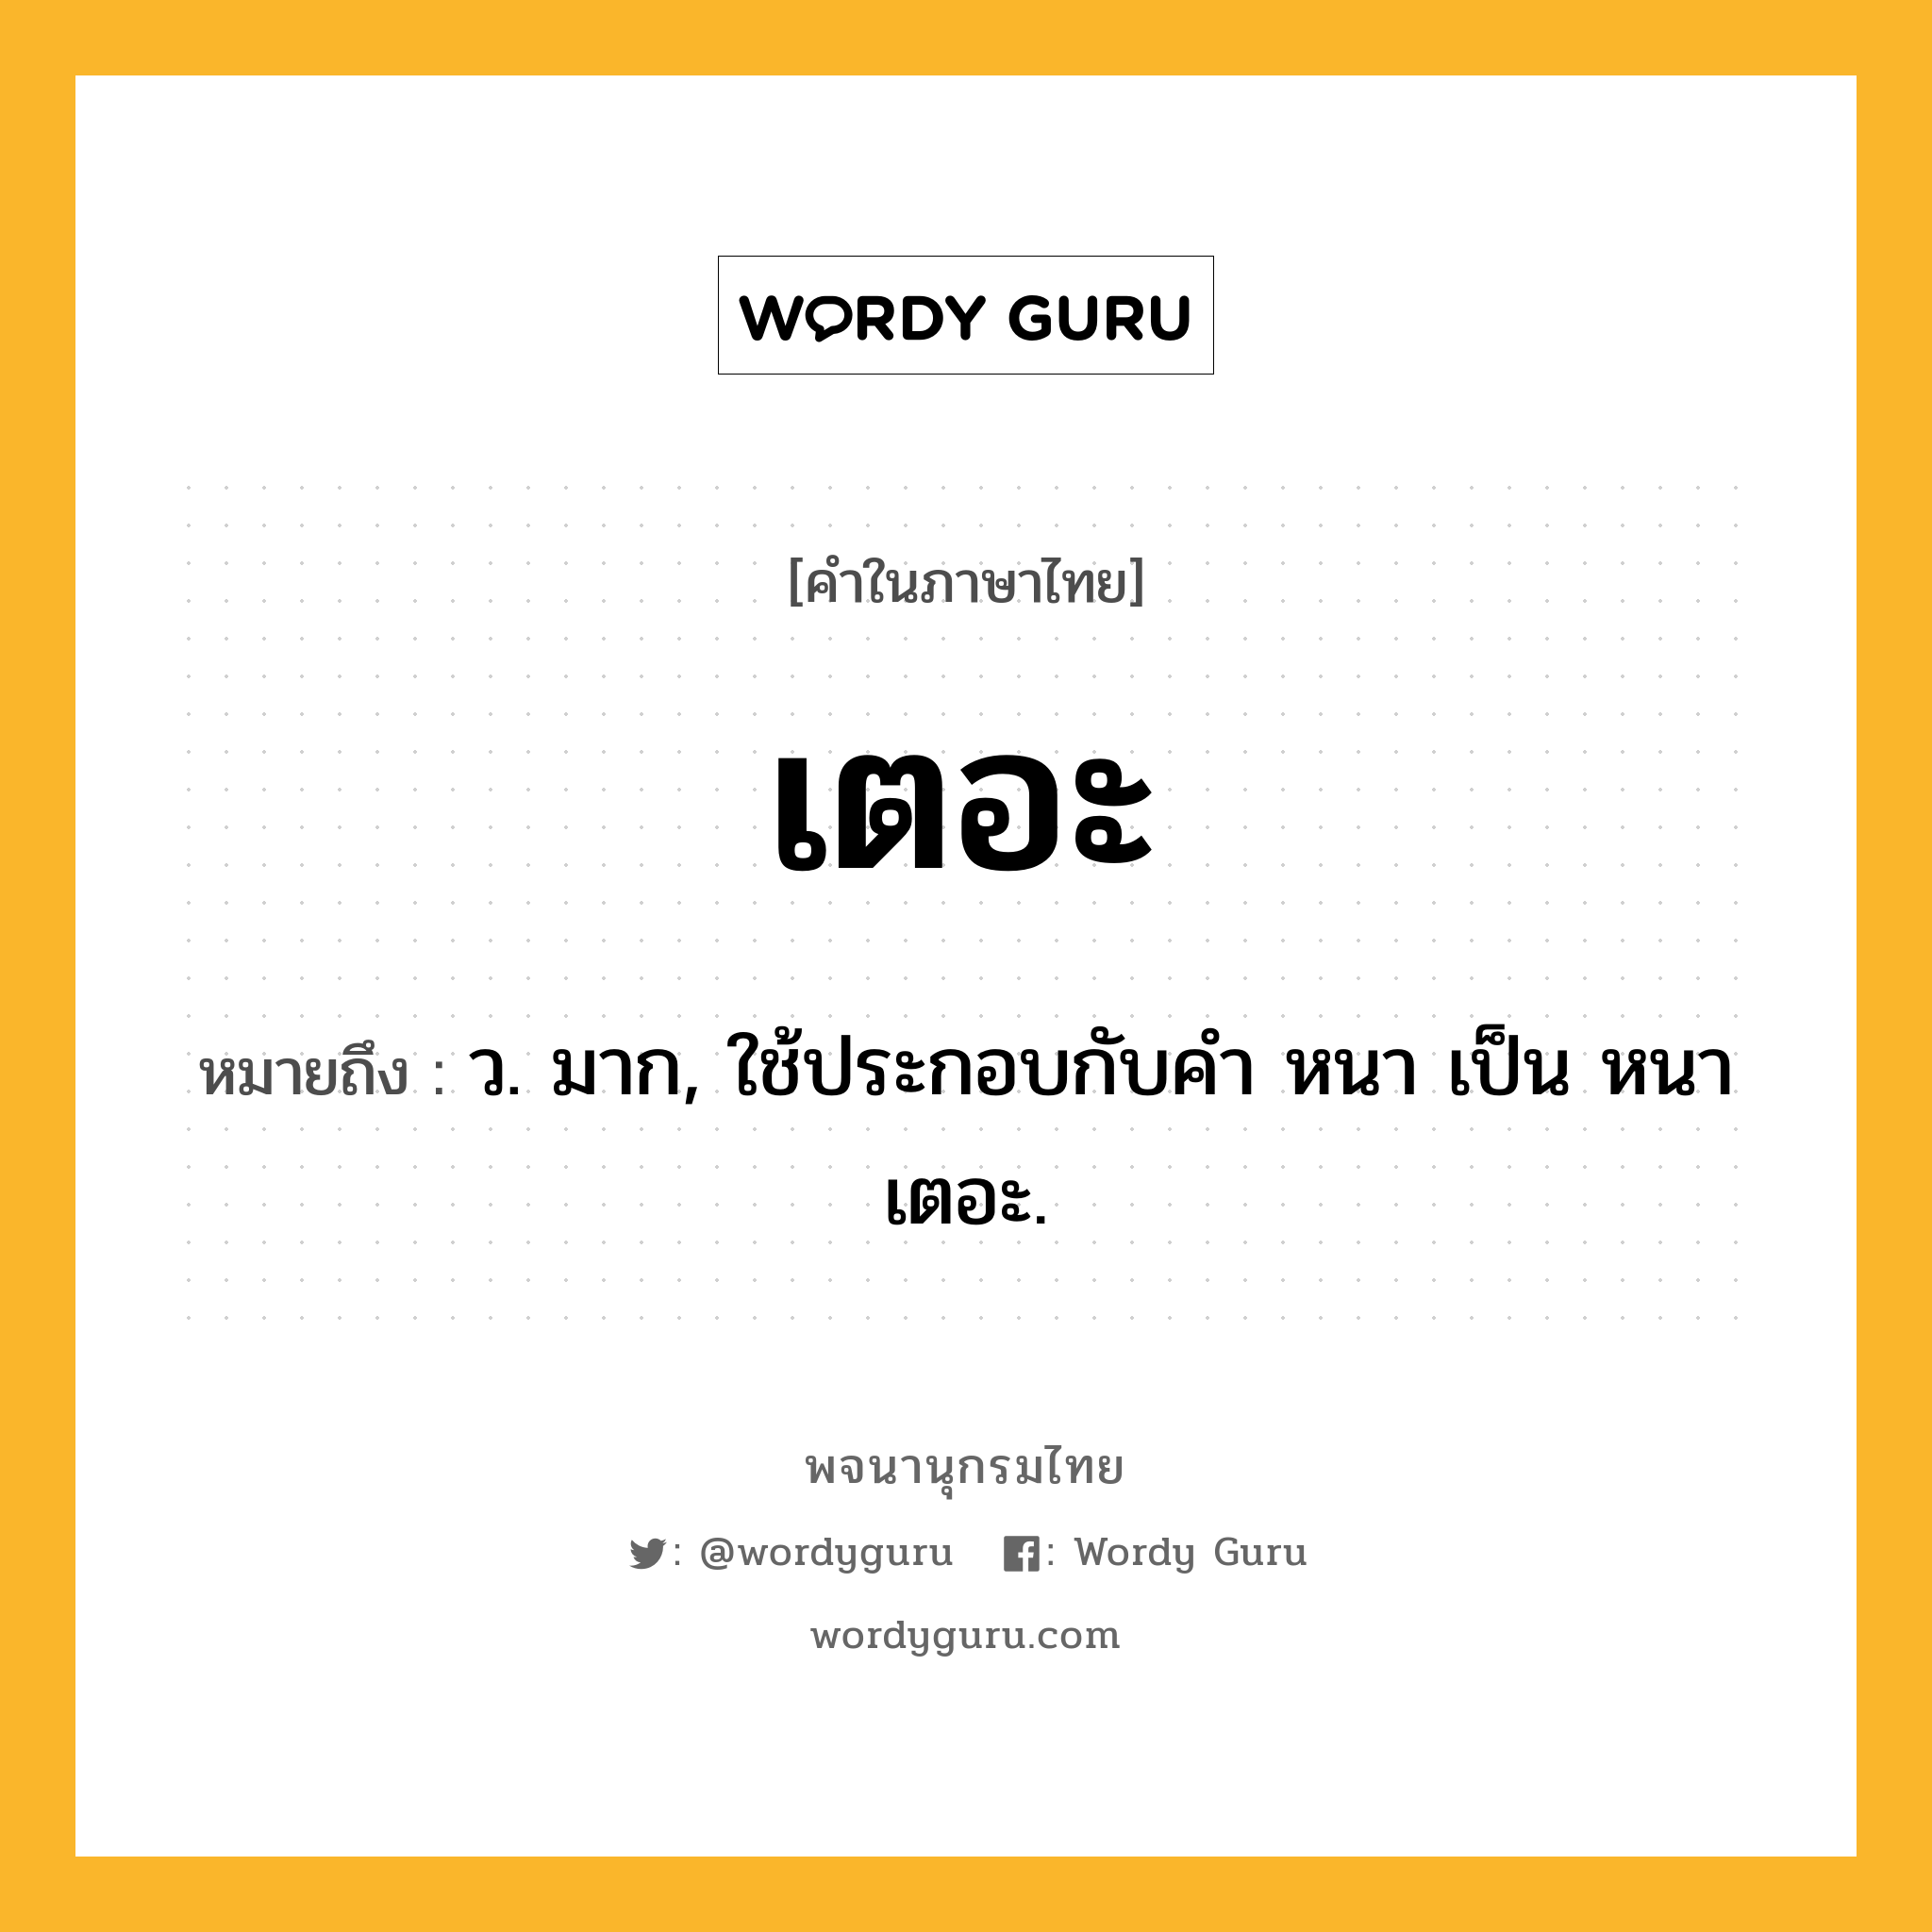 เตอะ ความหมาย หมายถึงอะไร?, คำในภาษาไทย เตอะ หมายถึง ว. มาก, ใช้ประกอบกับคํา หนา เป็น หนาเตอะ.